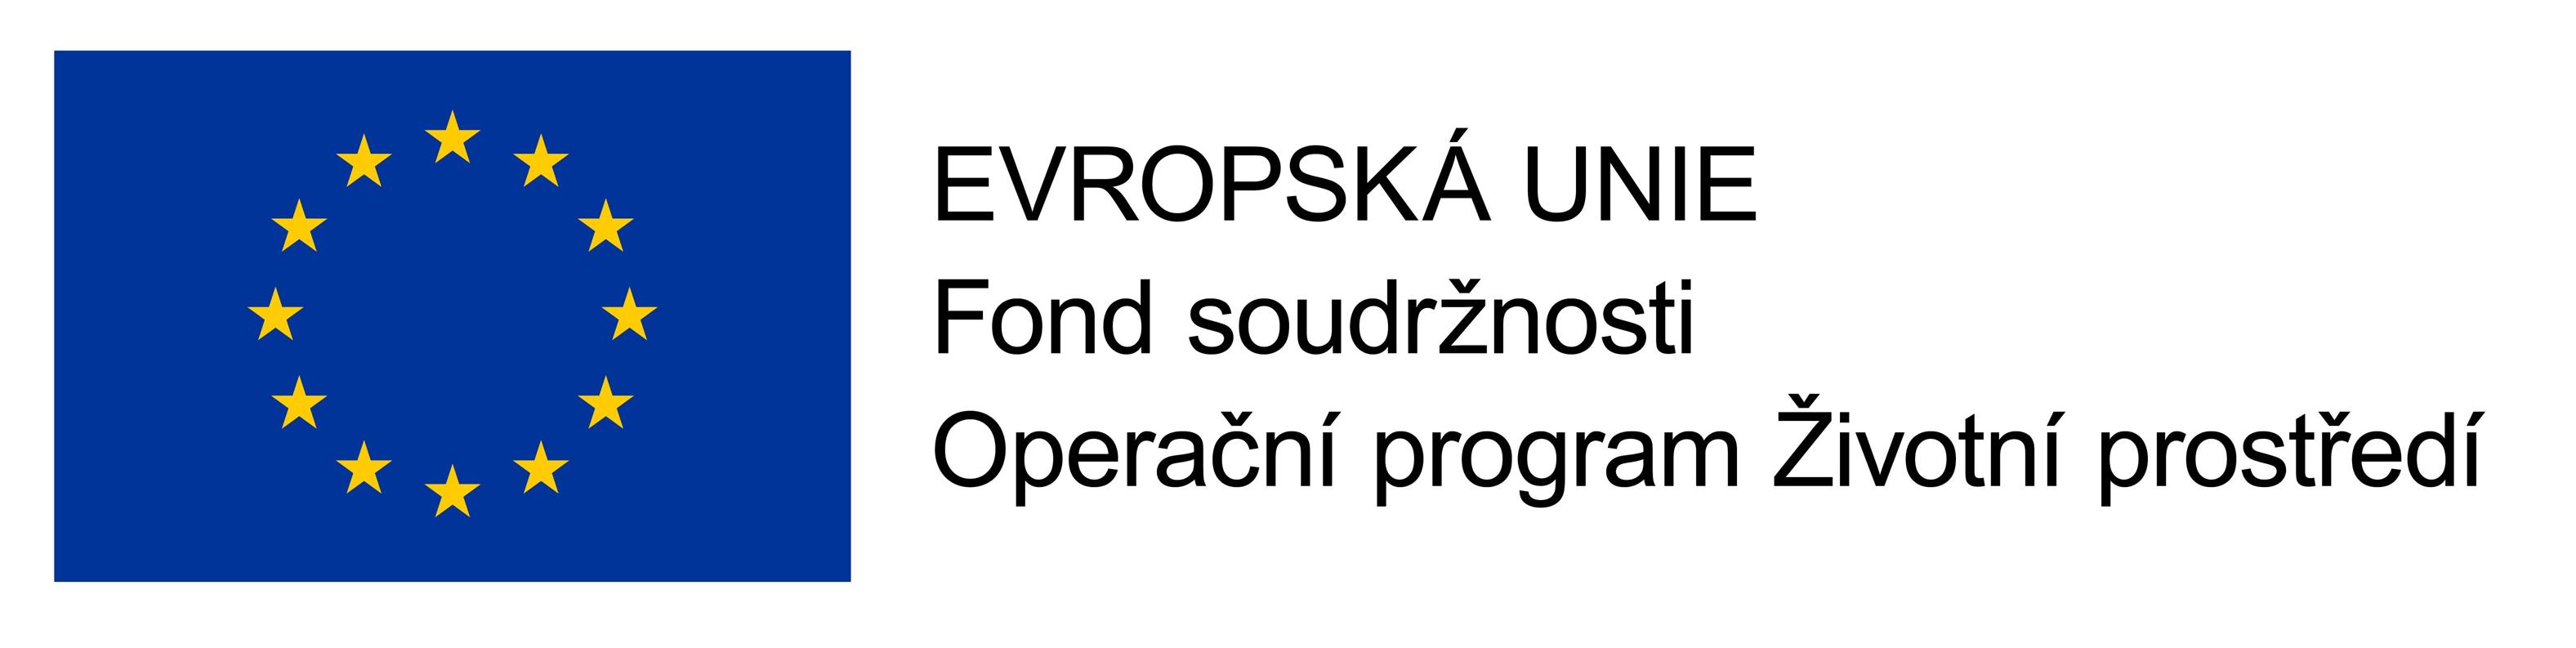 OPZP_logo.jpg